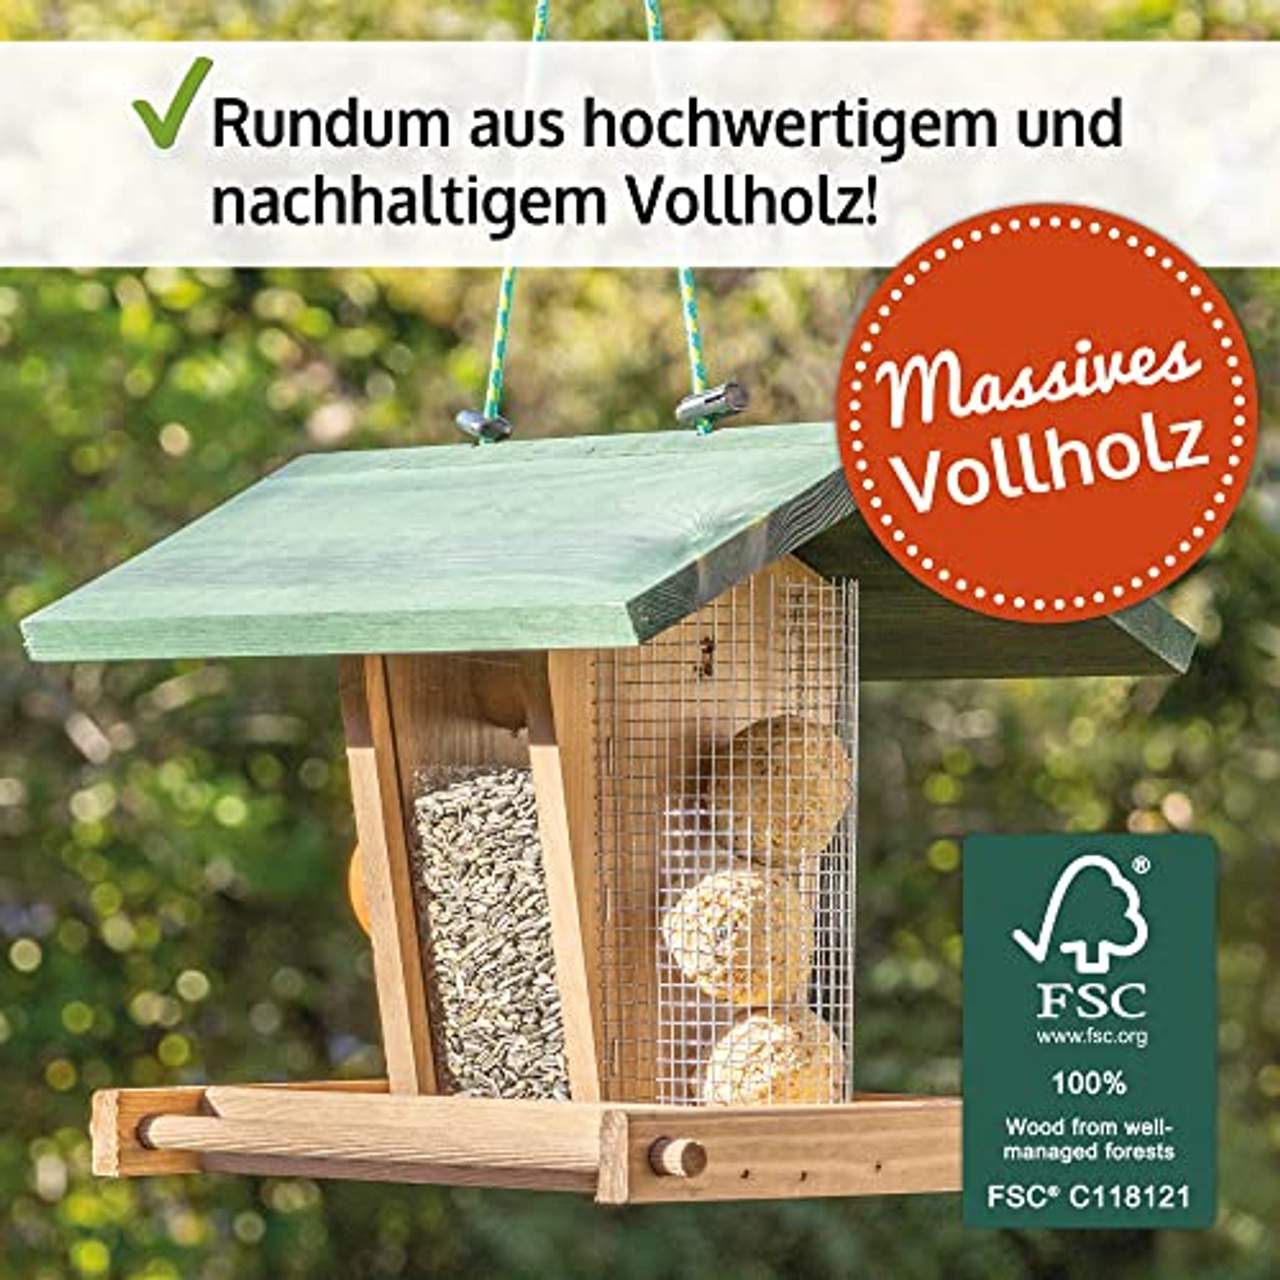 zooprinz Vogelhaus zum aufhängen nachhaltiger Vogelfutterspender